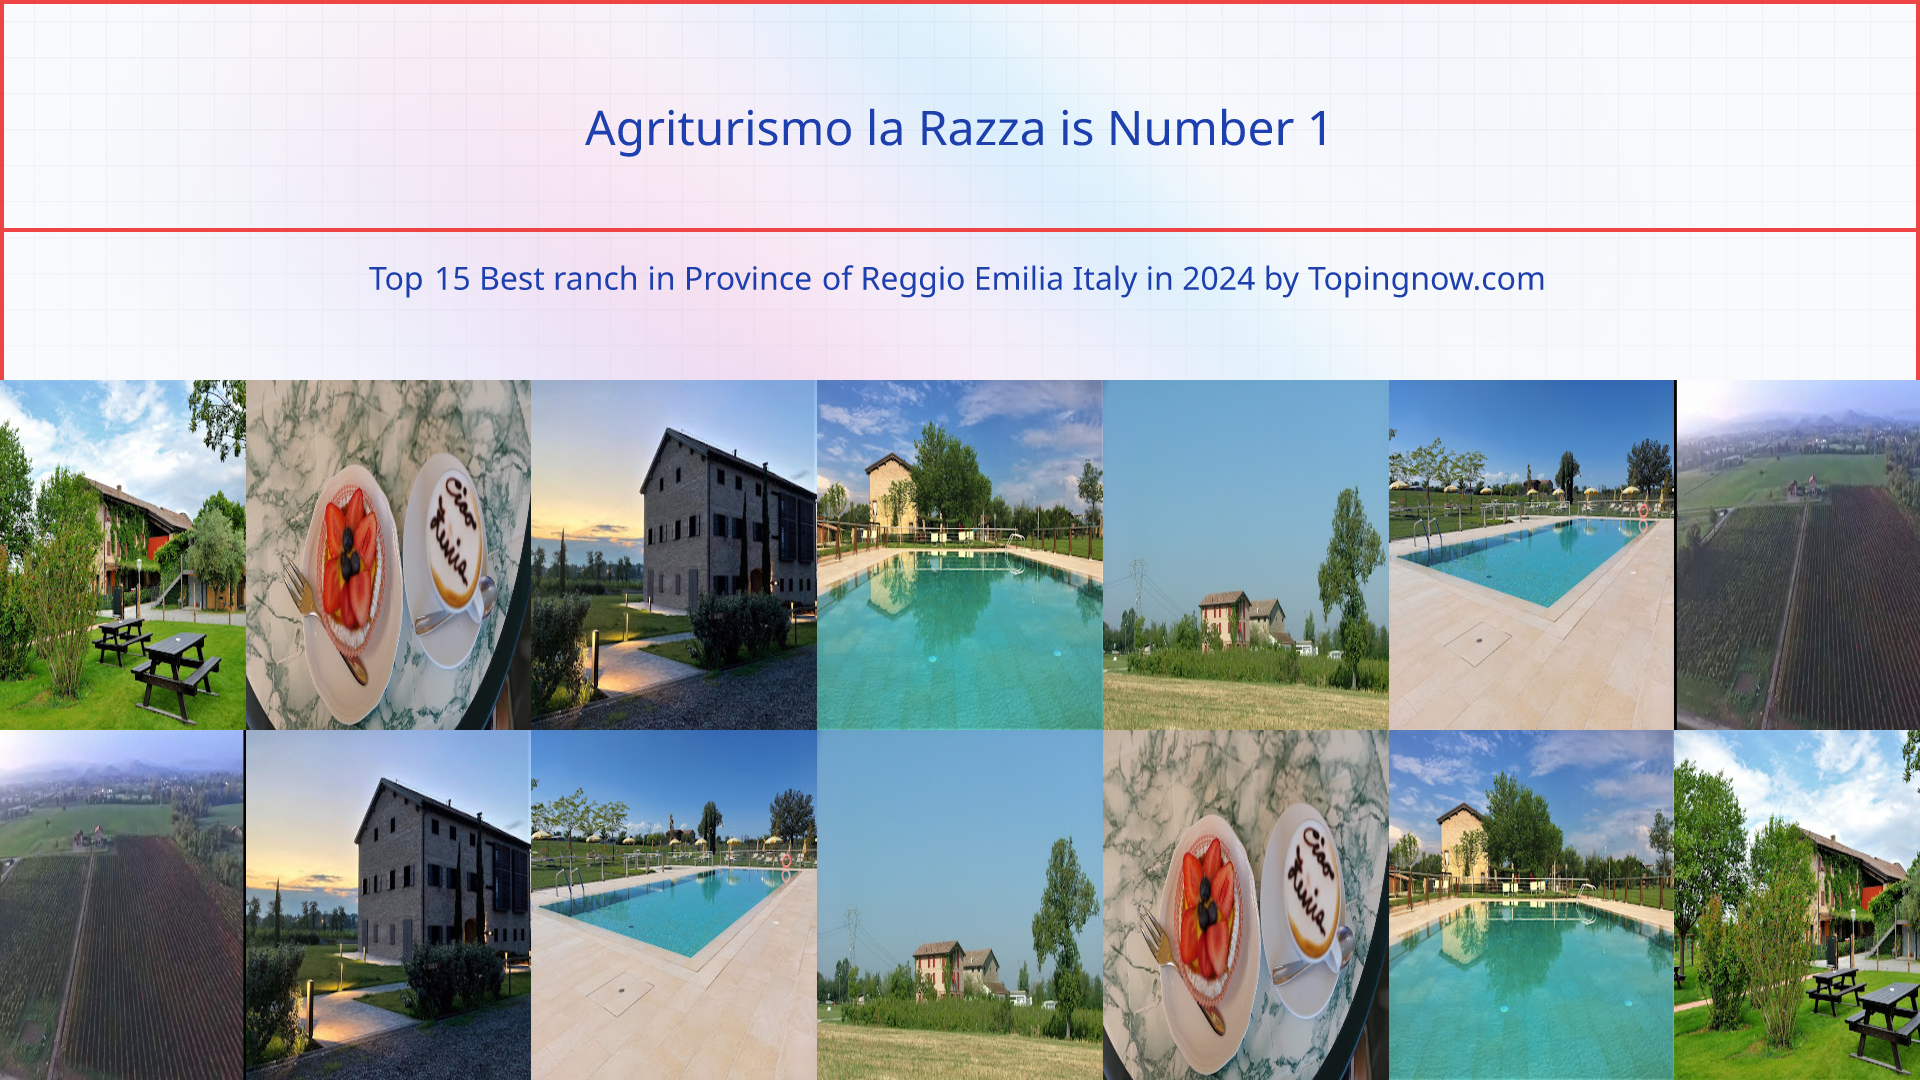 Agriturismo la Razza: Top 15 Best ranch in Province of Reggio Emilia Italy in 2024